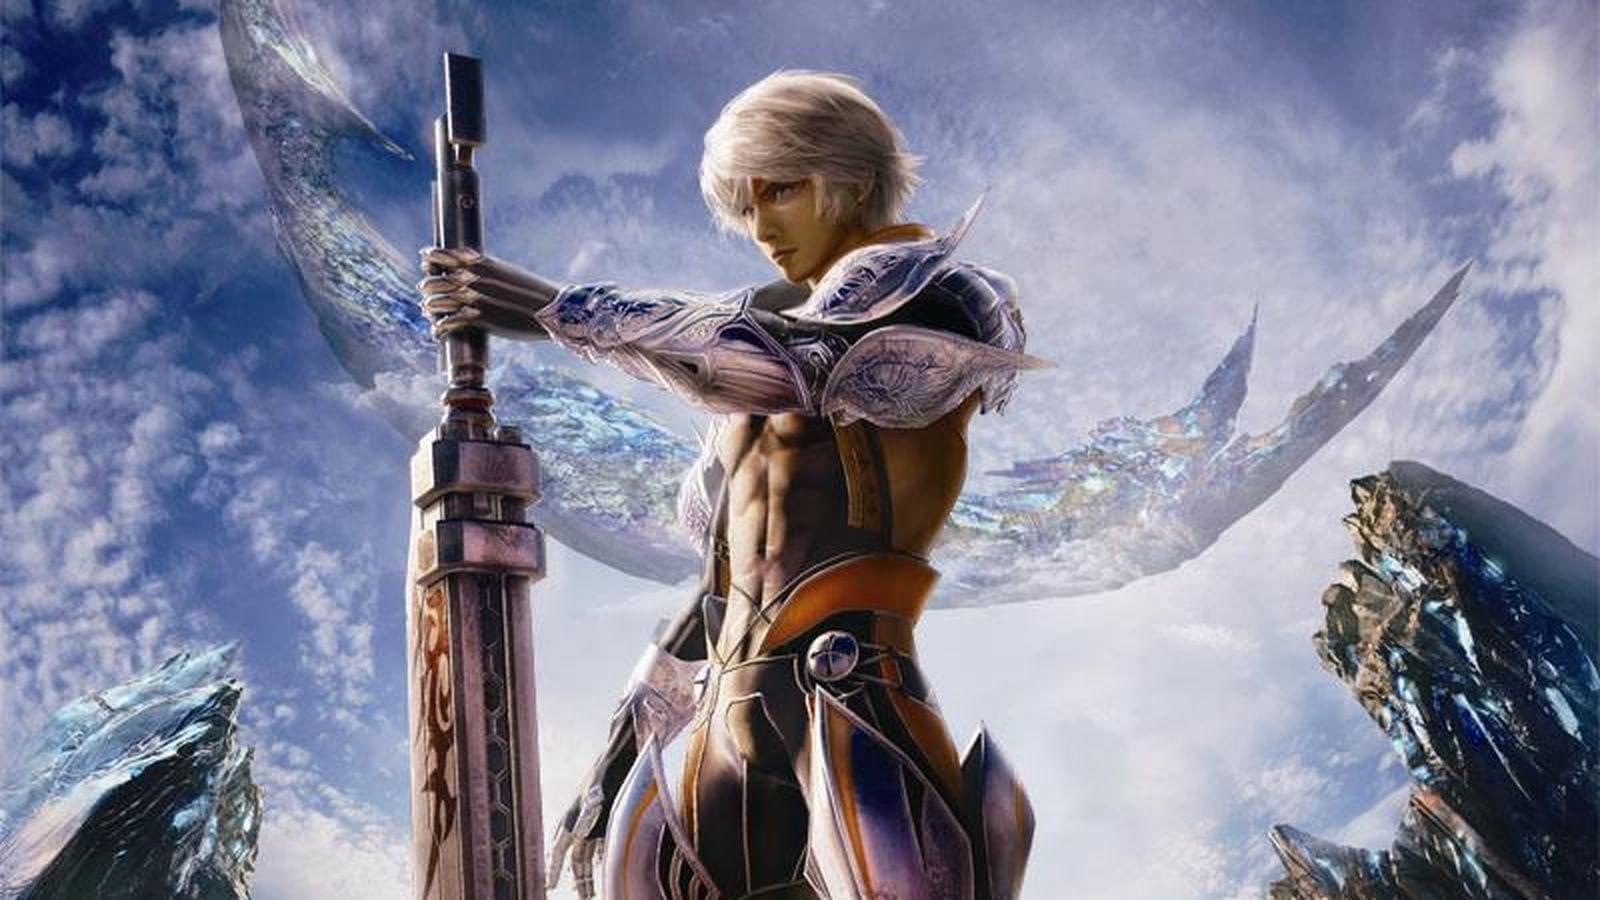 [Felieton] Final Fantasy Mobius i Brave Exvius - różne wymiary kieszonkowych fantazji